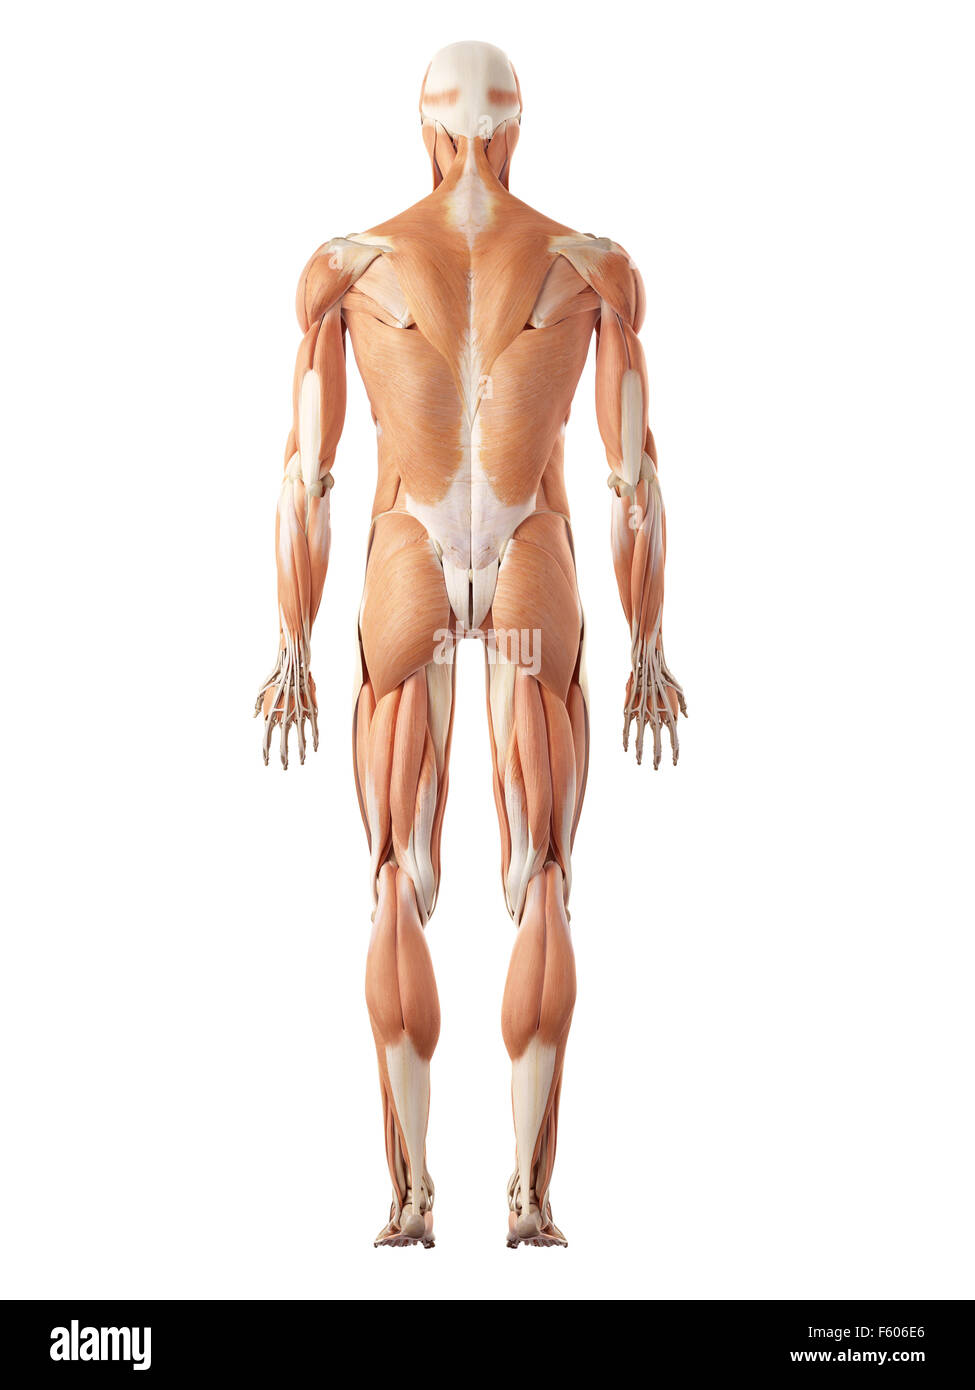 Medical precisa ilustración del sistema muscular Foto de stock